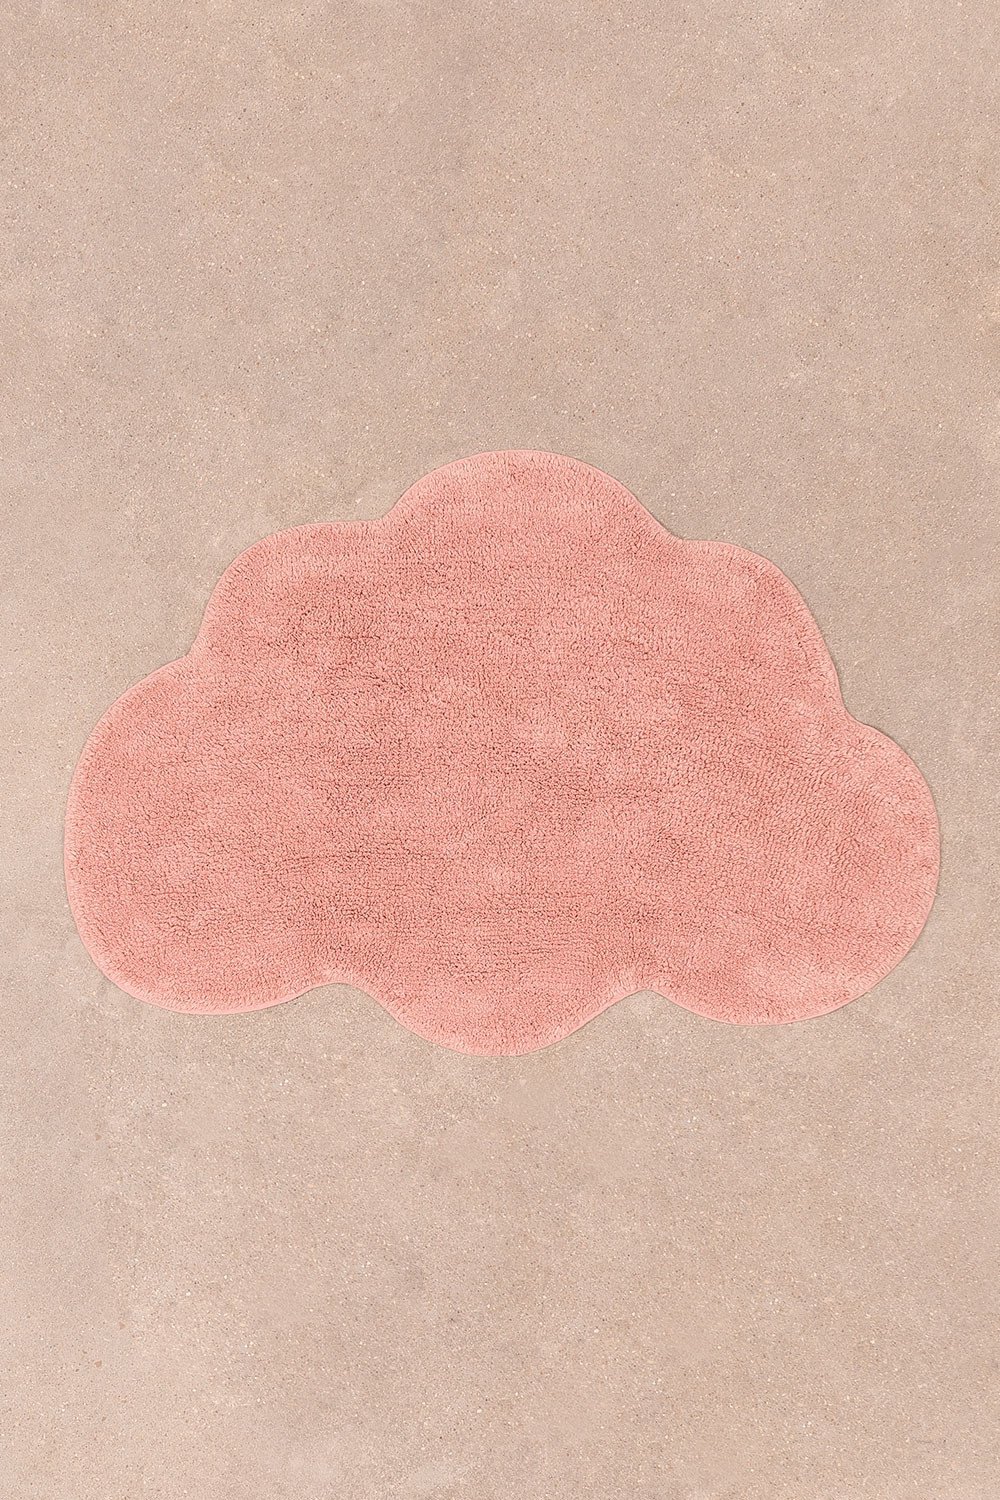 Tapis en coton (69x100 cm) Cloud Kids, image de la galerie 1